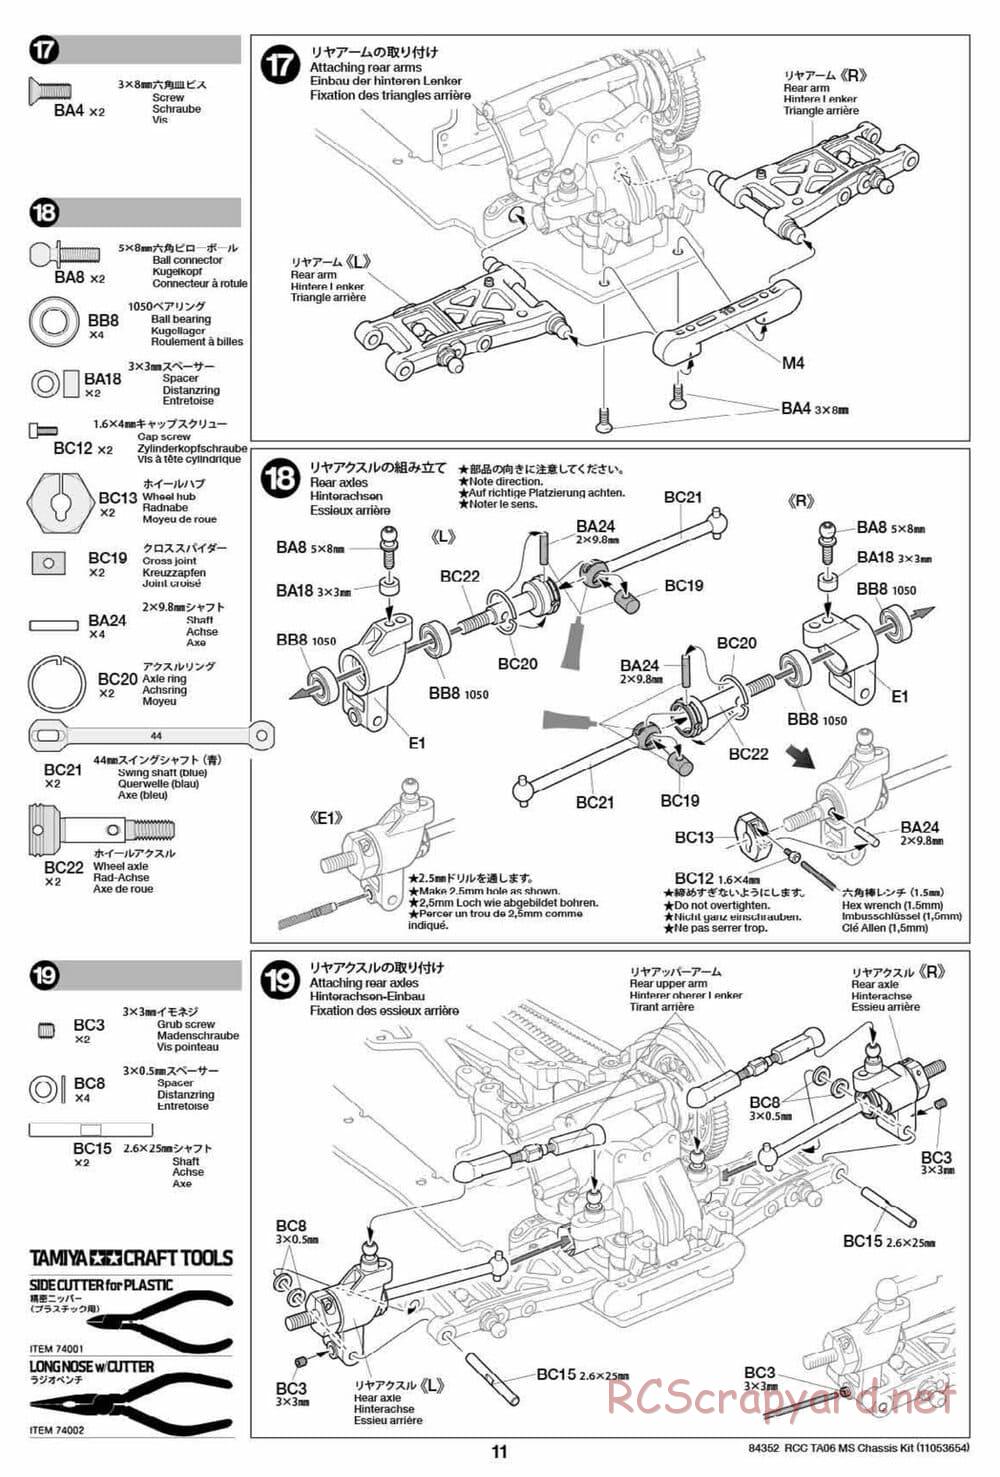 Tamiya - TA06 MS Chassis - Manual - Page 11